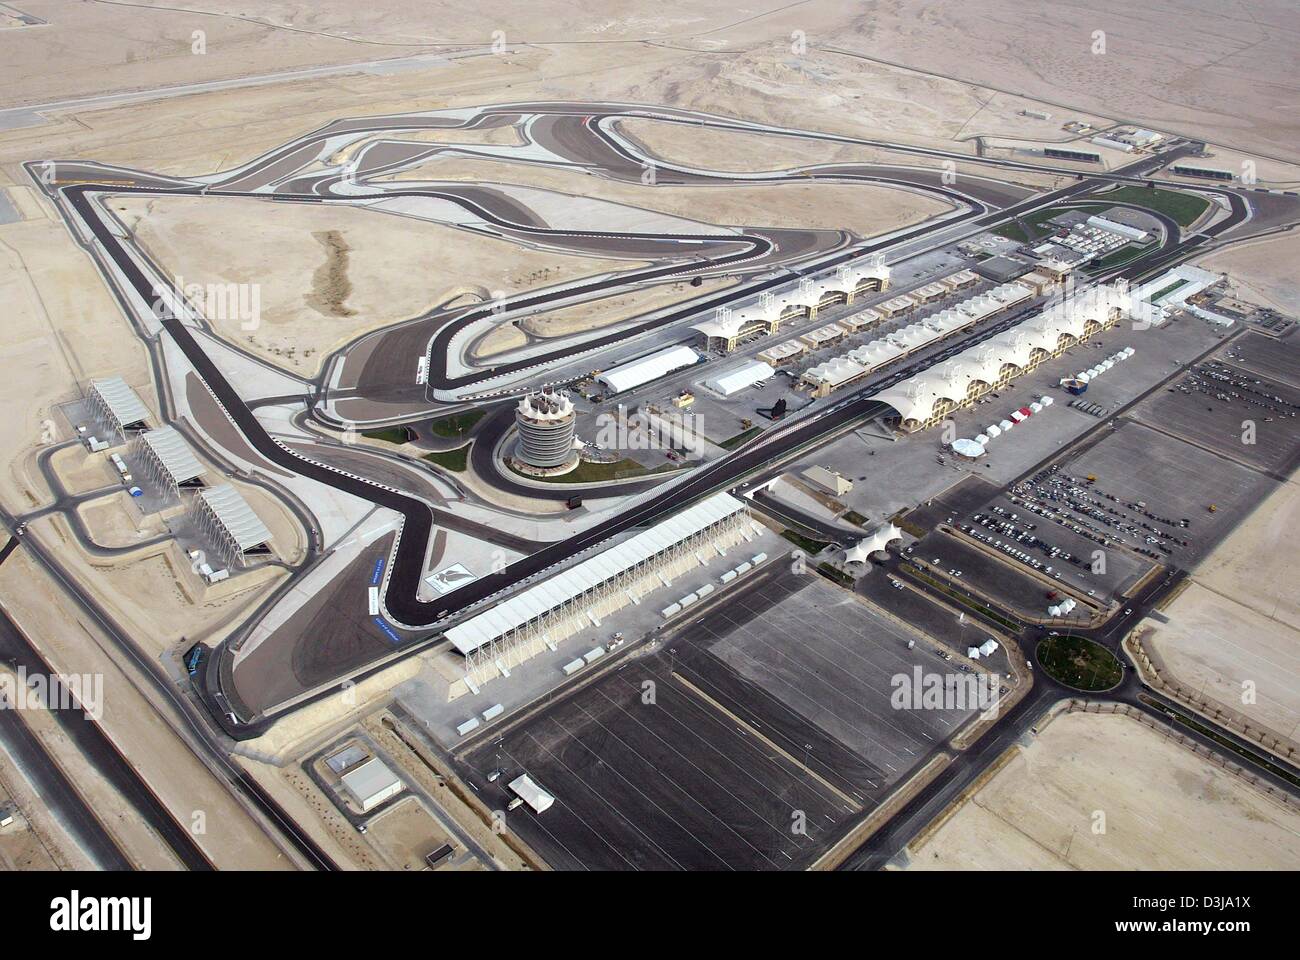 (Dpa) Vue aérienne de la piste F1 'Circuit International de Bahreïn' qui se trouve dans la chaleur le Jeudi, 1 avril 2004, dans près de la capitale Manama Bahreïn. Le 4 avril 2004, la troisième course de Formule 1 qui aura lieu sur cette hippodrome nouvellement construit qui a été construit en seulement 16 mois et permet autour de 70,000 spectateurs de suivre la course. Prince héritier Cheikh Salman bin Hamad al Ka Banque D'Images